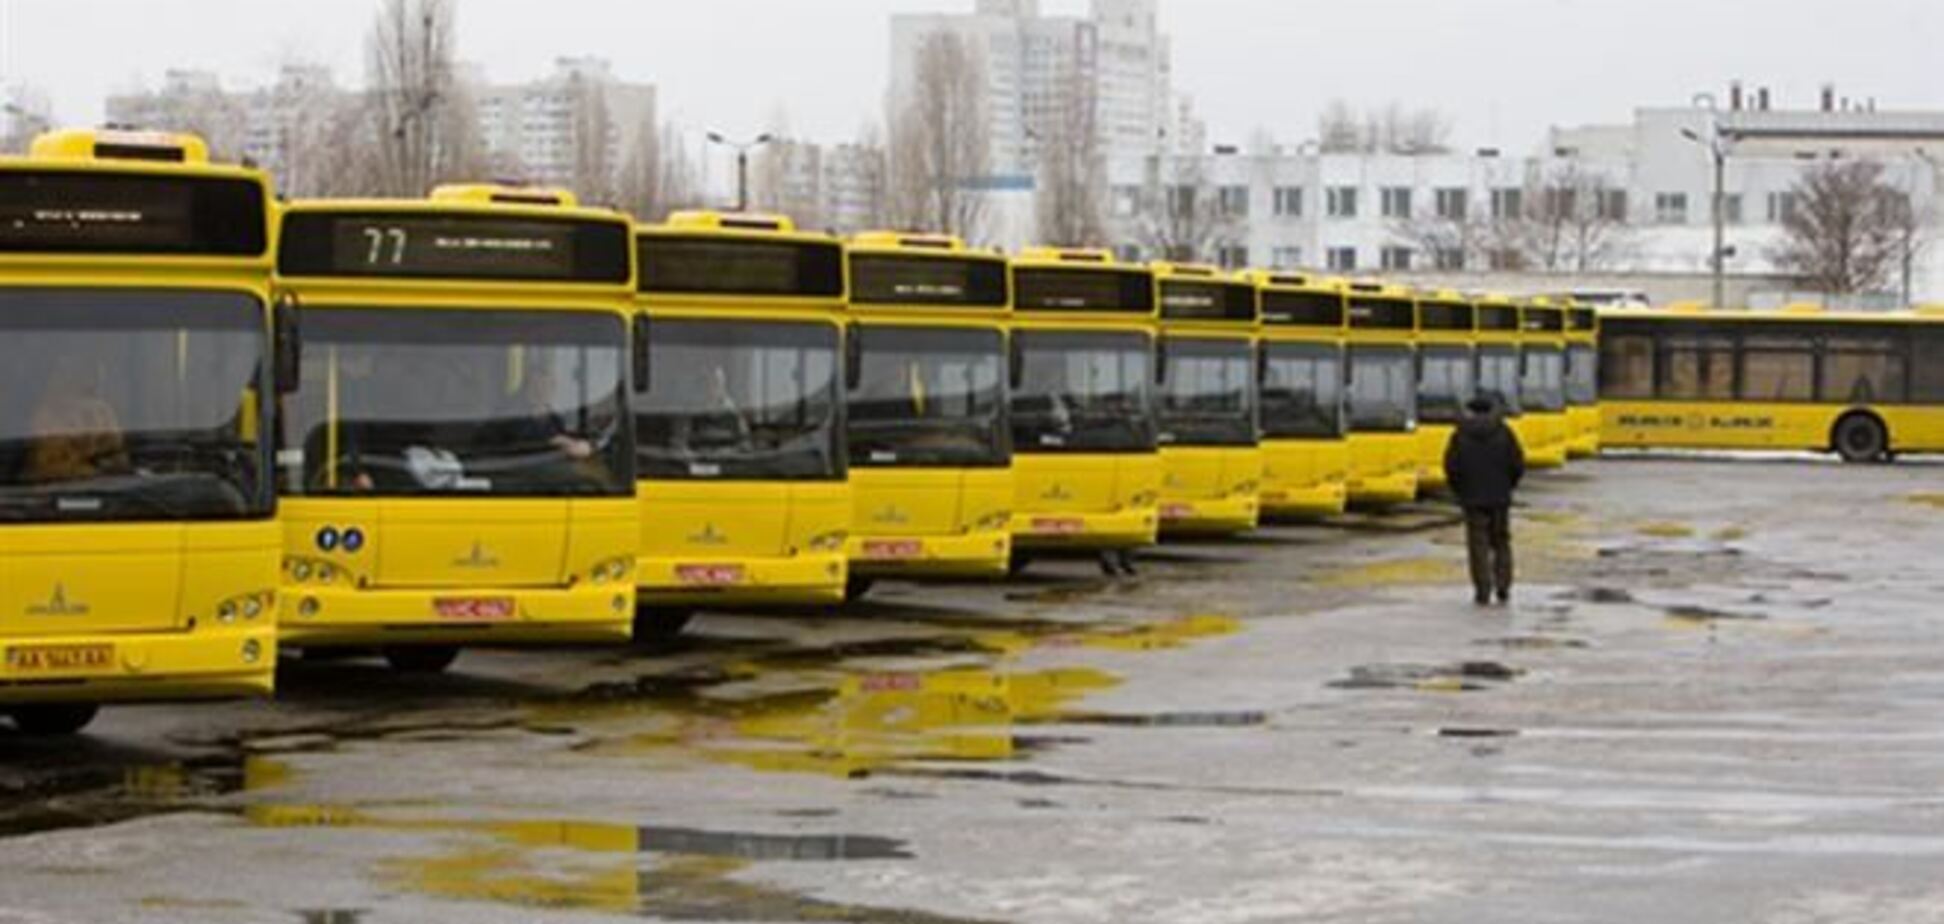 Наземный транспорт в Киеве продолжает работать в усиленном режиме - КГГА